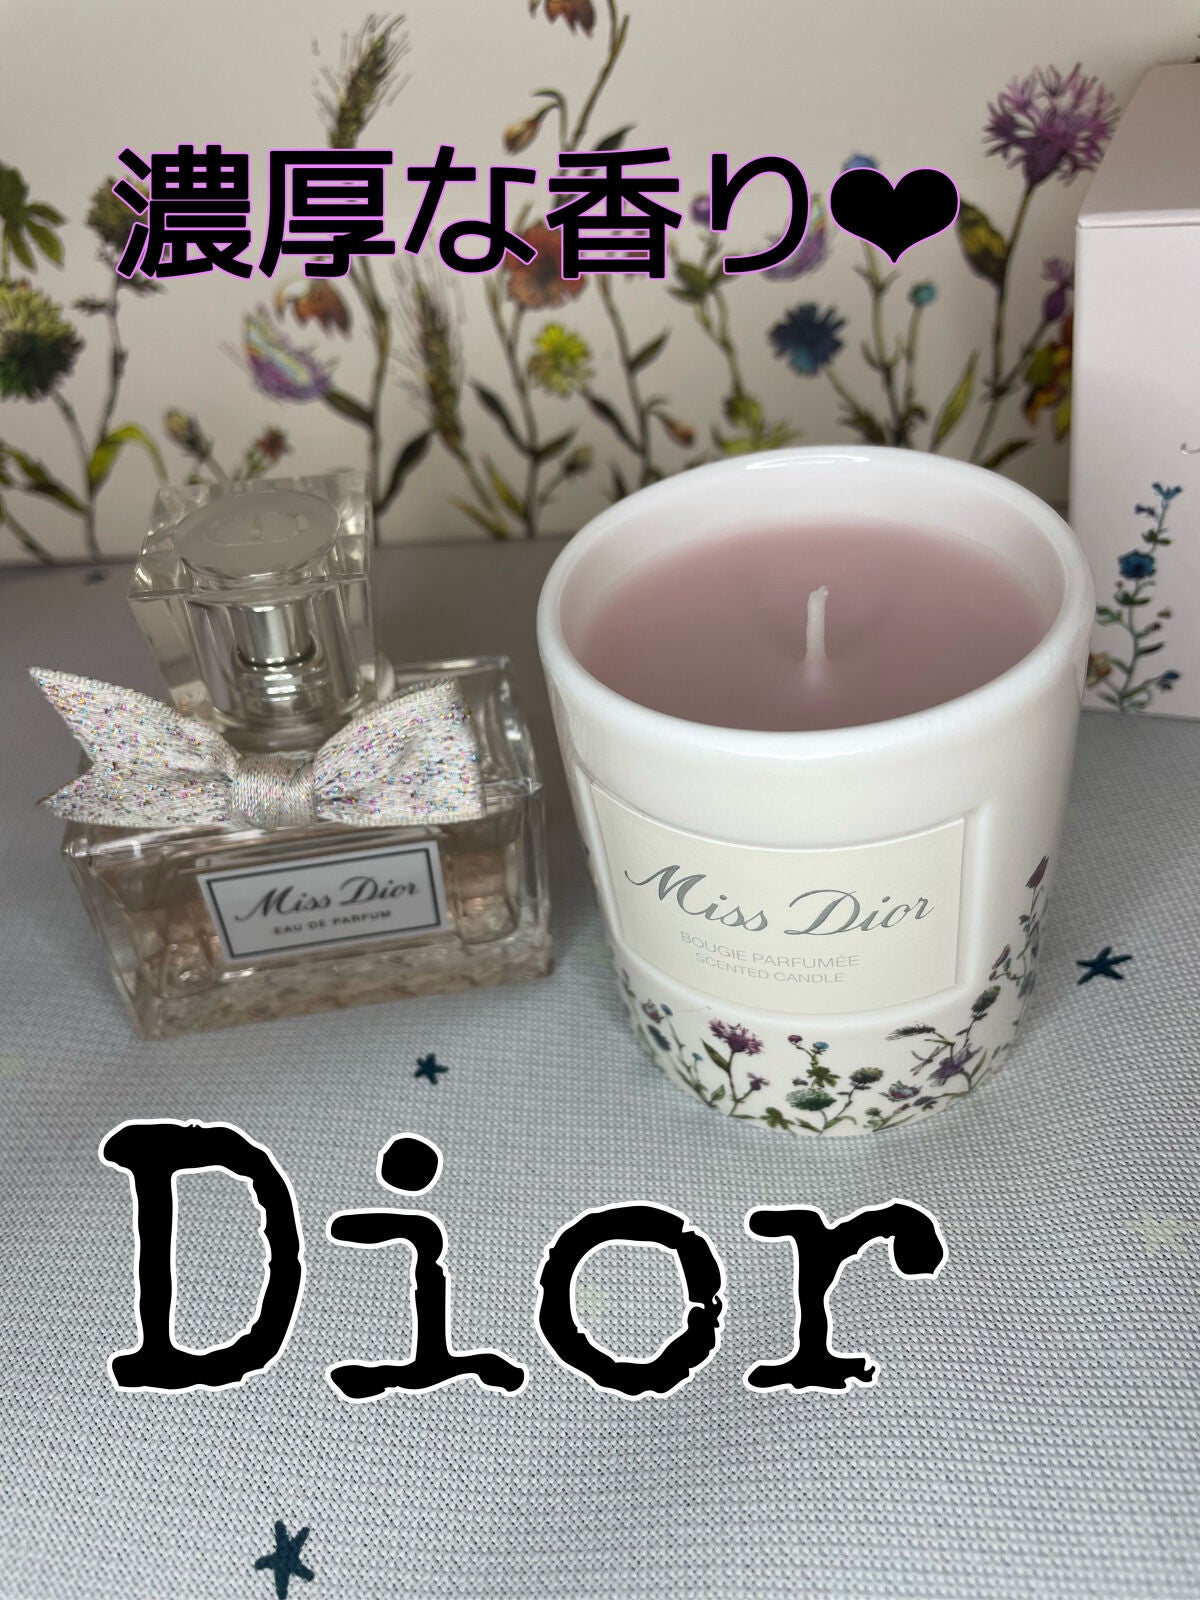 ミス ディオール オードゥ パルファン｜Diorを使った口コミ - Dior ...